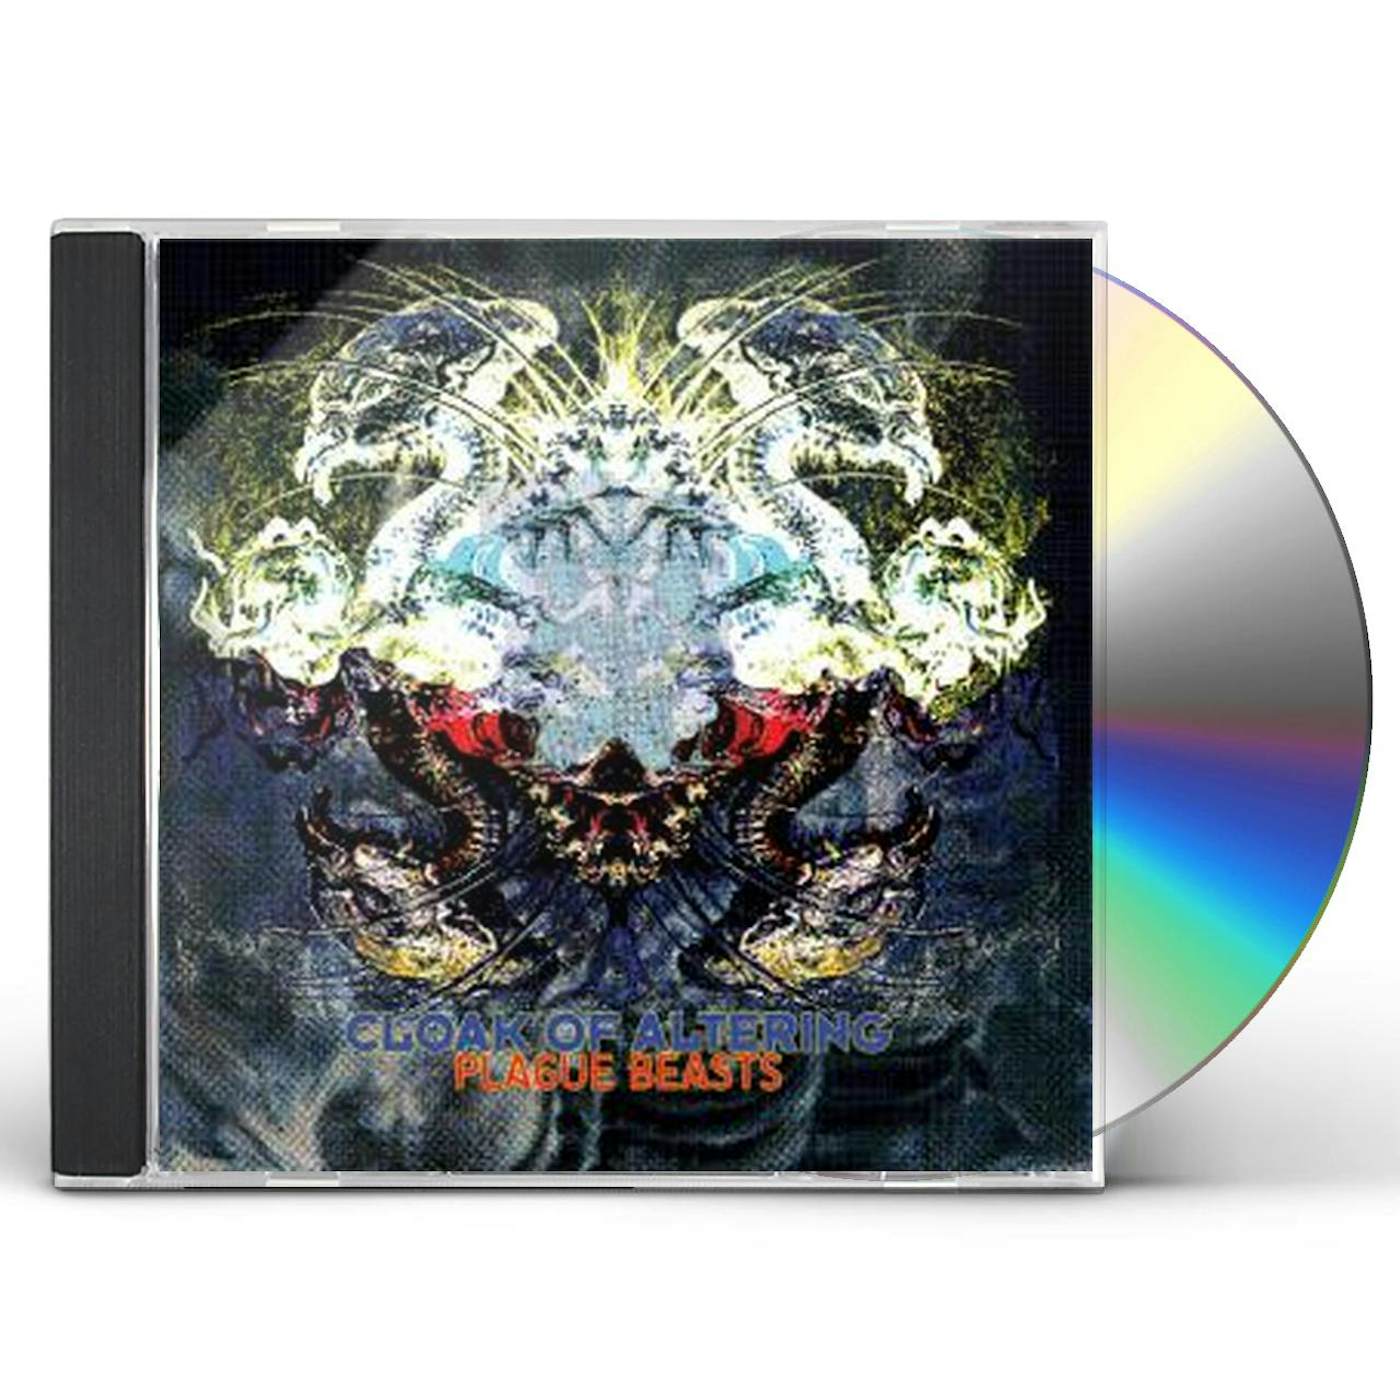 Cloak of Altering PLAGUE BEASTS CD